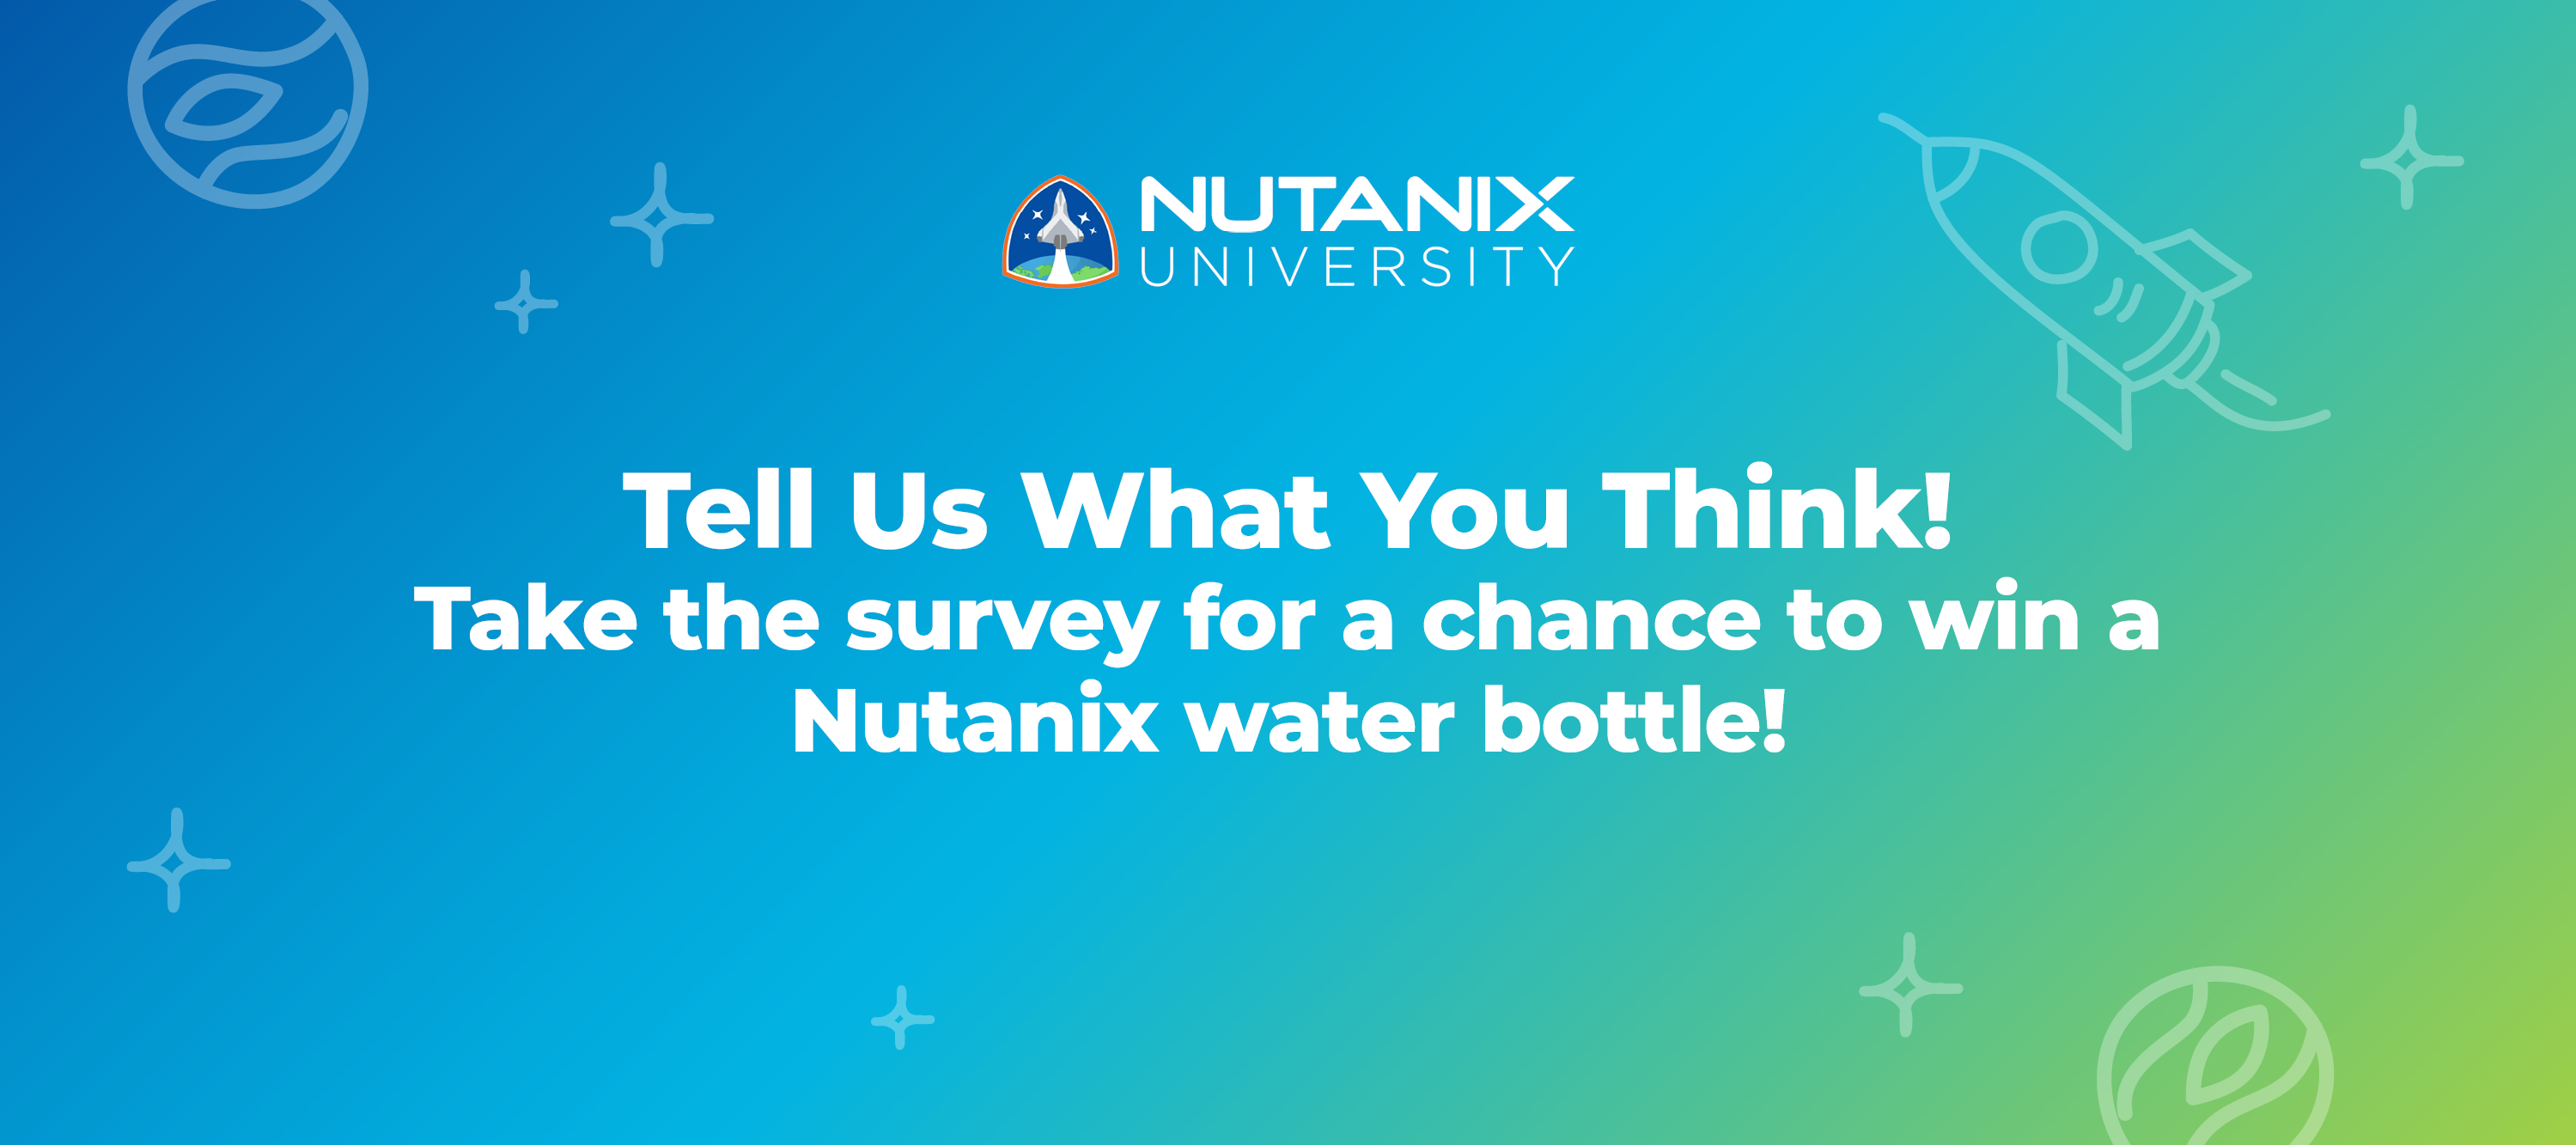 Nutanix University Survey: Tell Us What You Think!